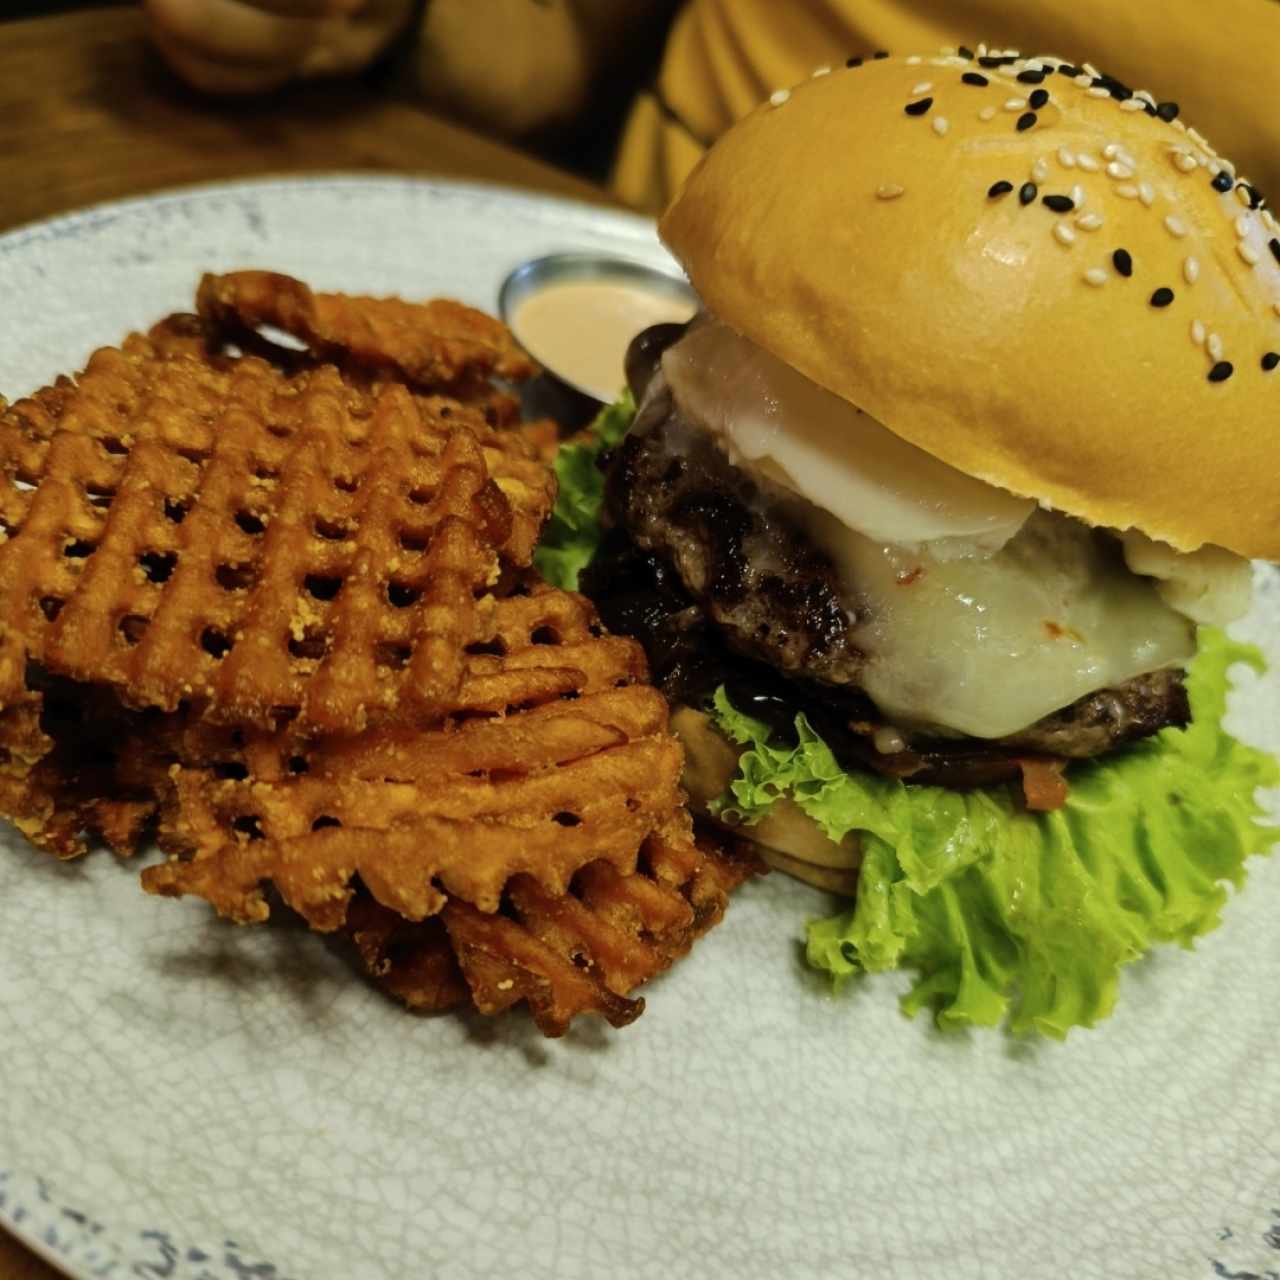 Hamburguesa "león burger" creada por uno mismo con Camote